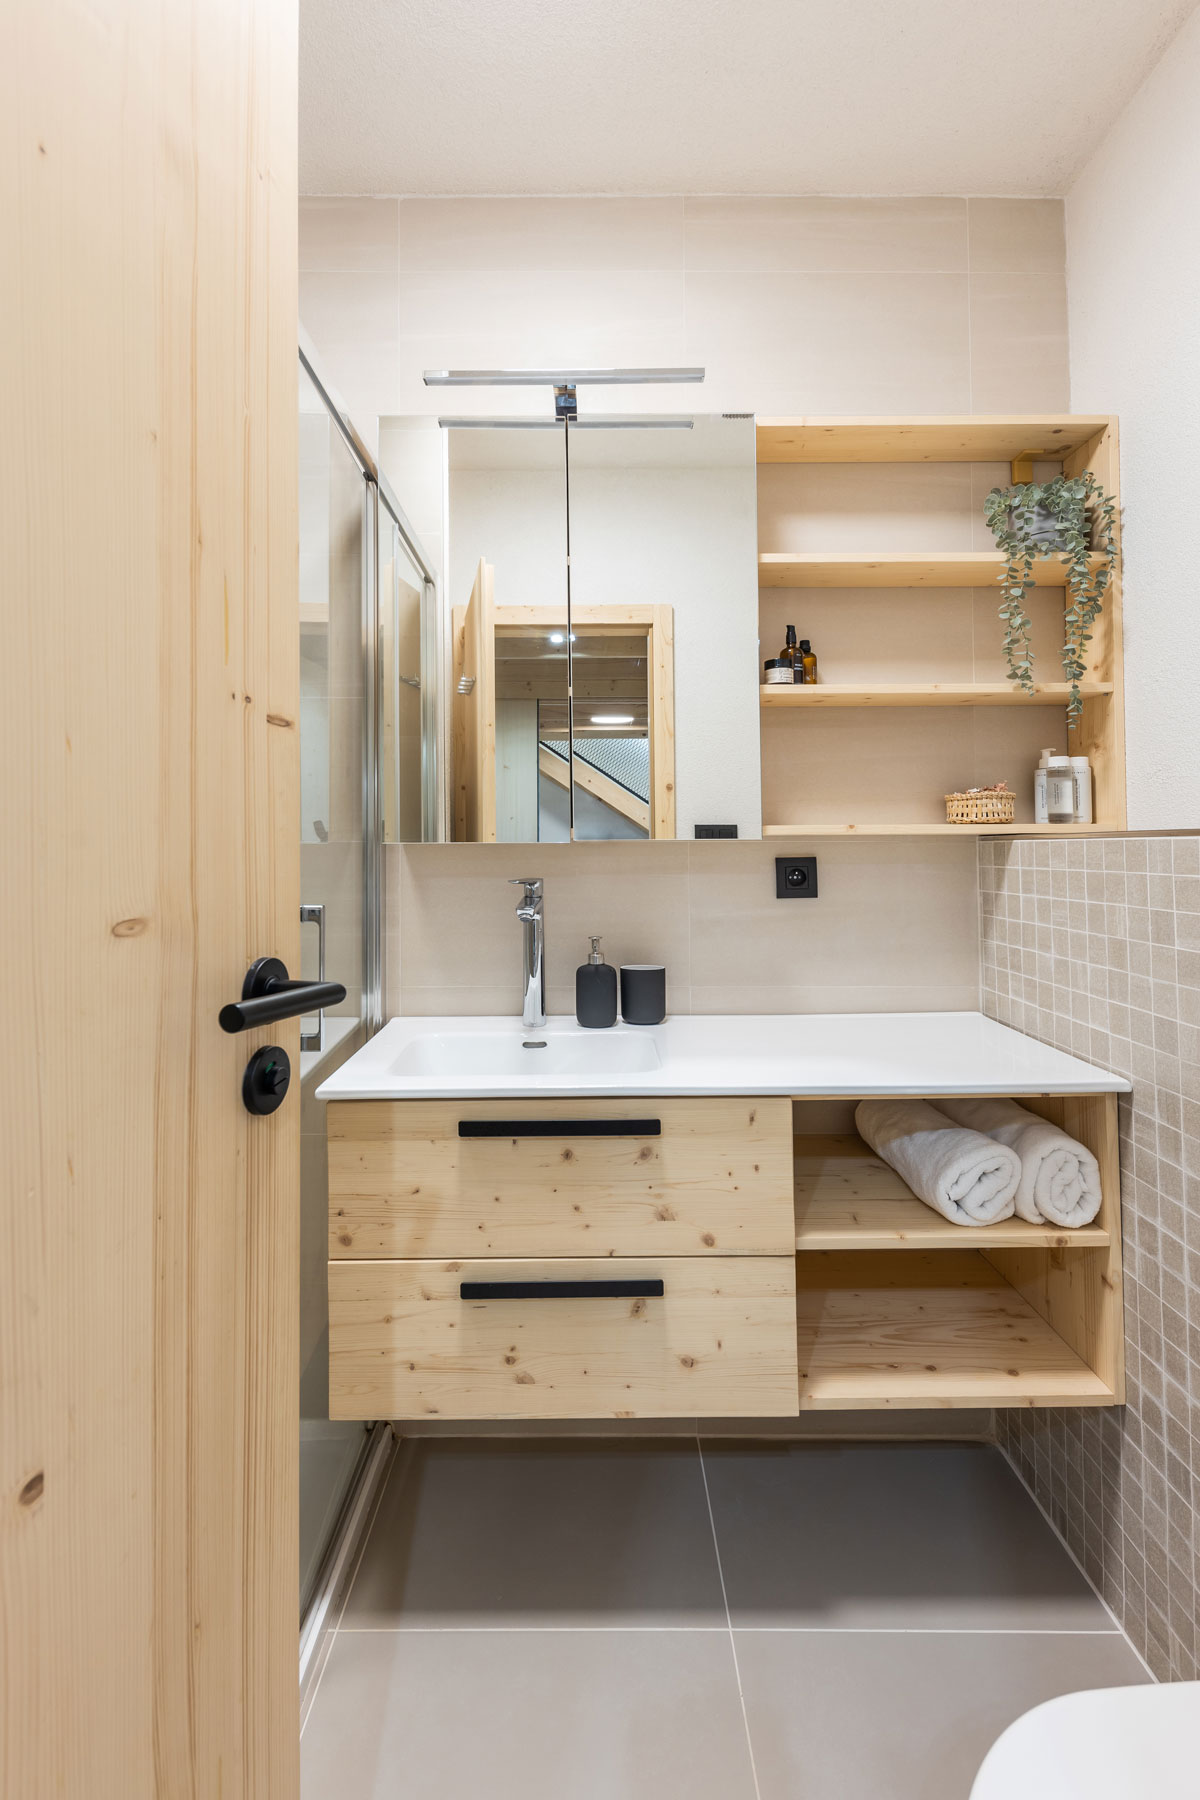 kúpeľňa s dreveným nábytkom a umývadlom s odkladacím miestom, ktoré je cez celú skrinku